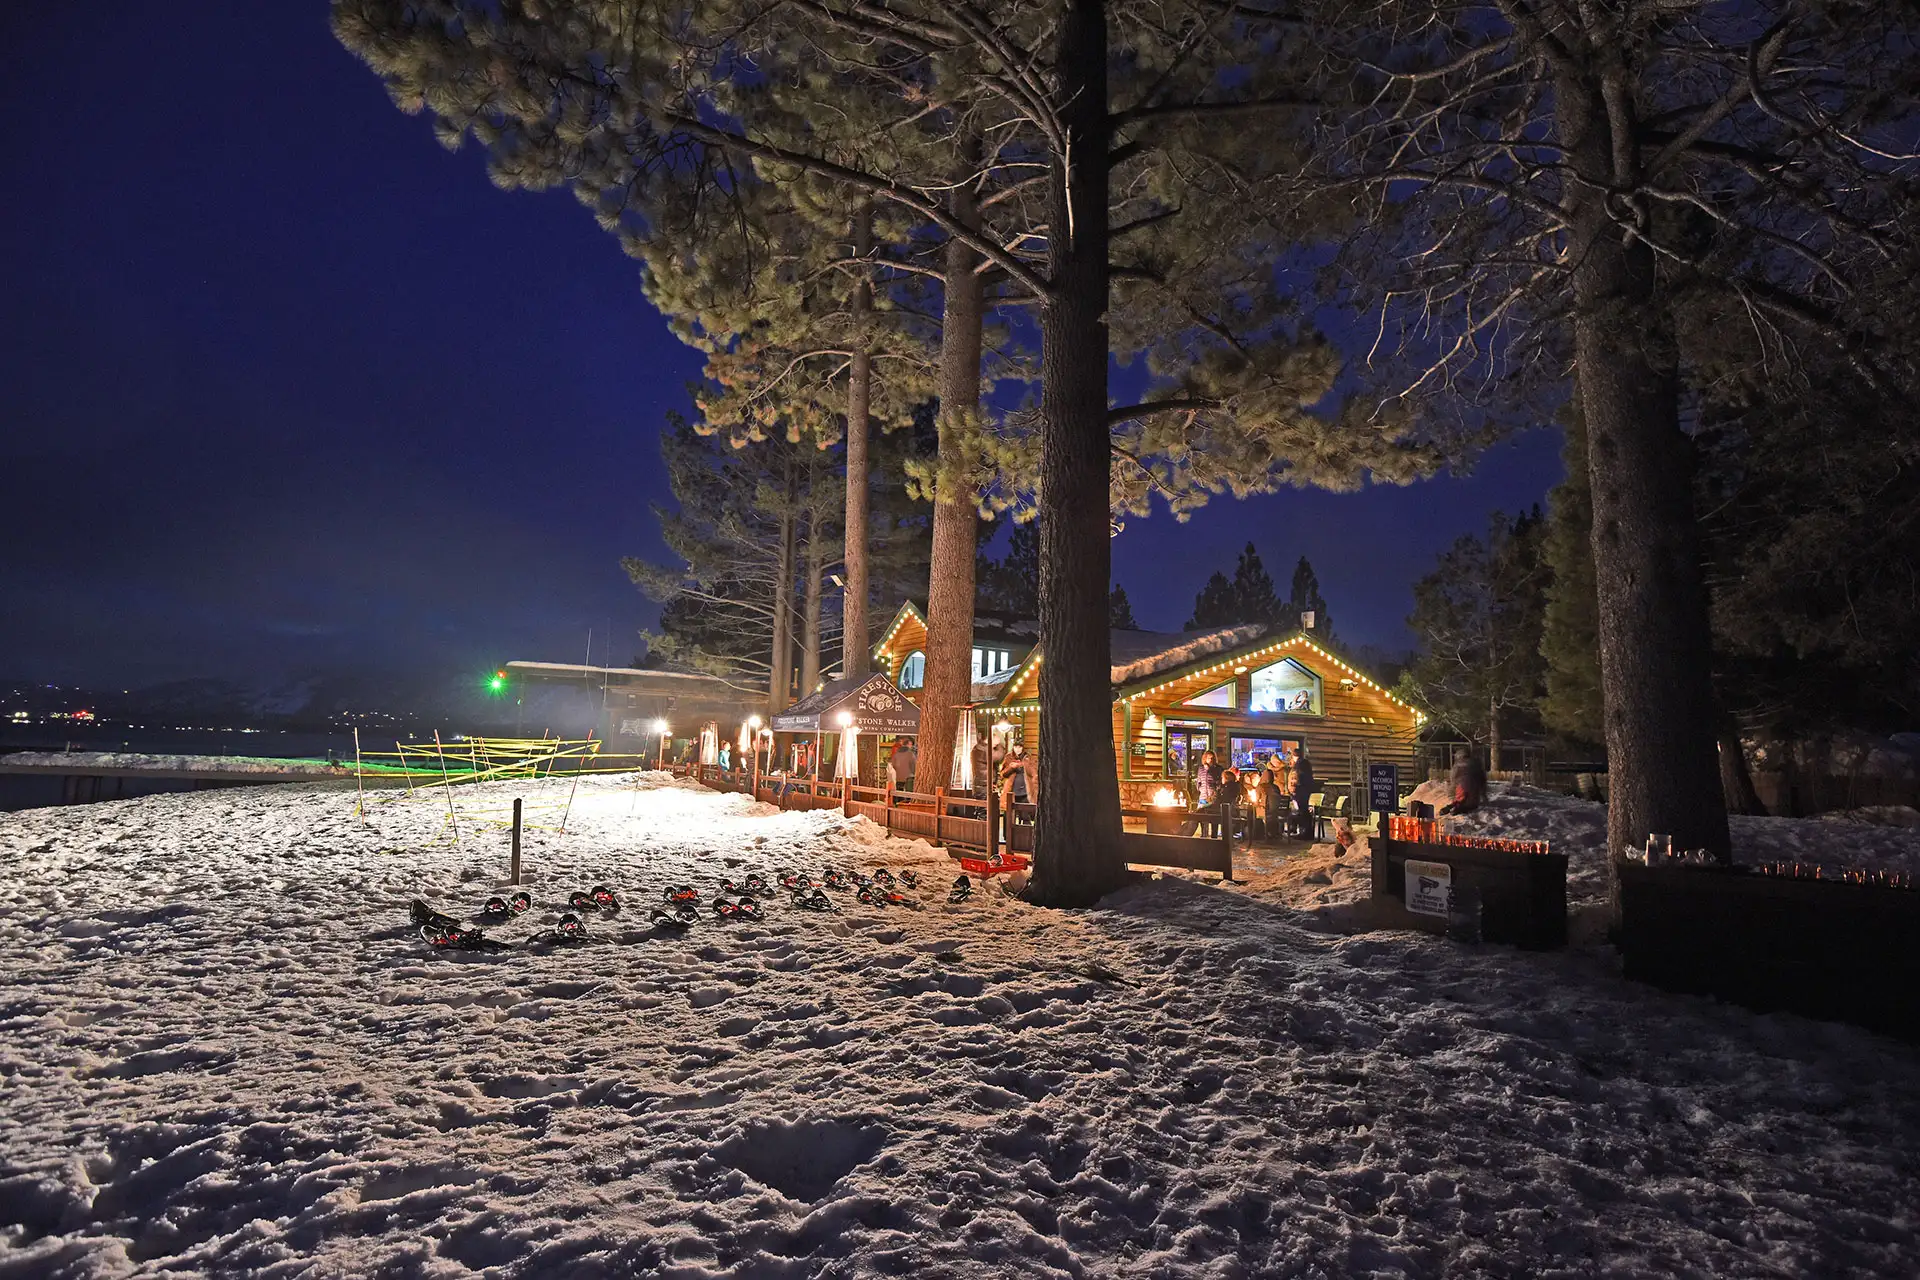 Camp Richardson Resort in South Lake Tahoe, CA